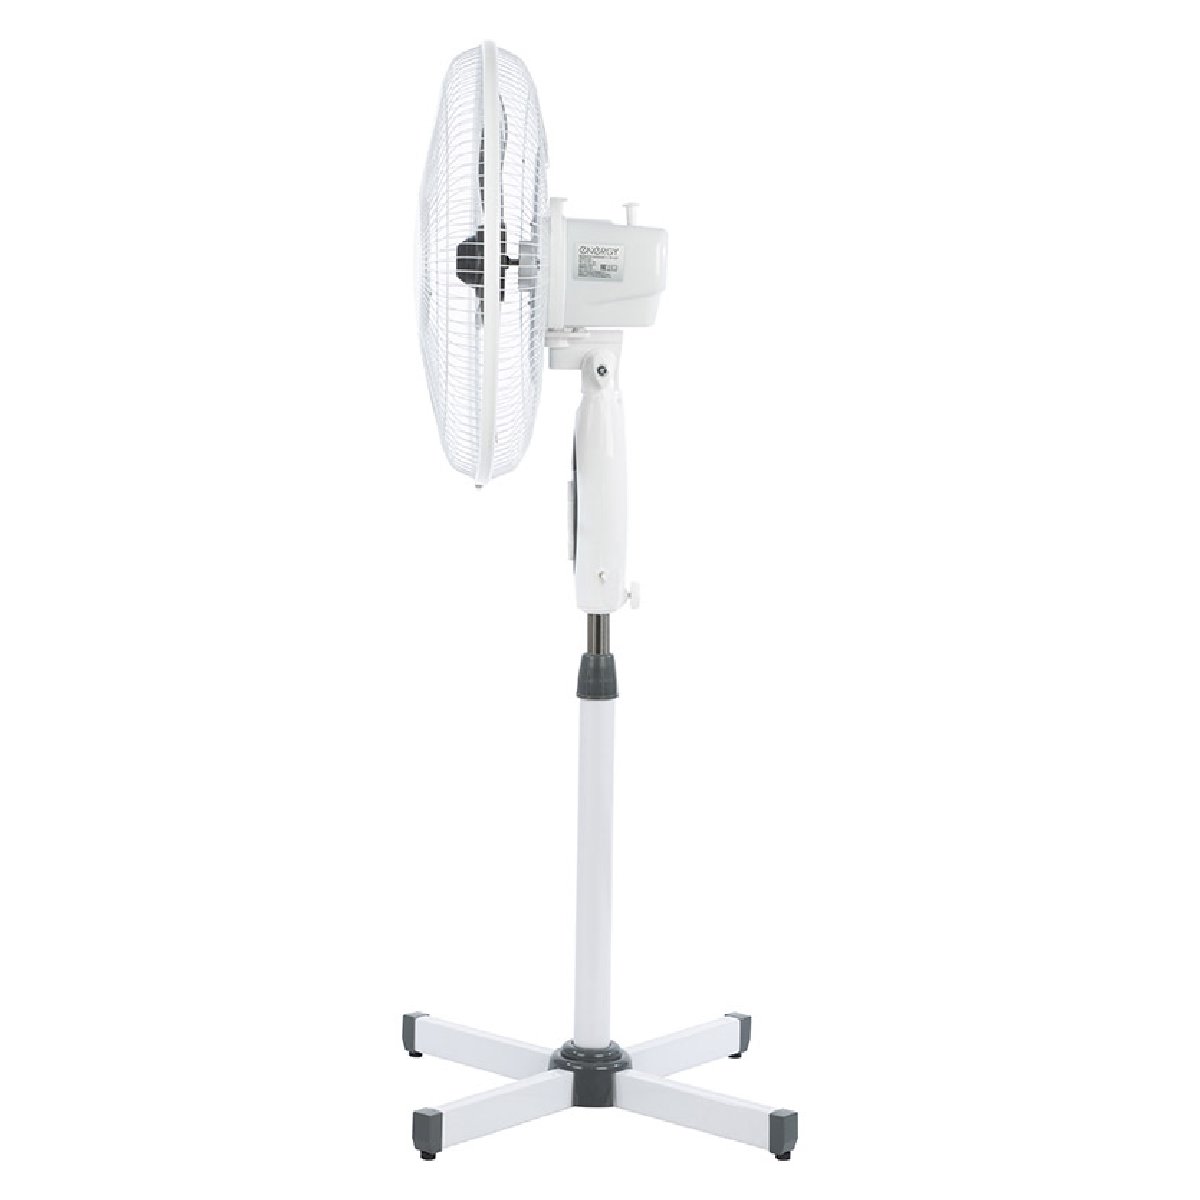 Вентилятор напольный Energy EN-1659 диам.40см,40 Вт,3 скорости, белый